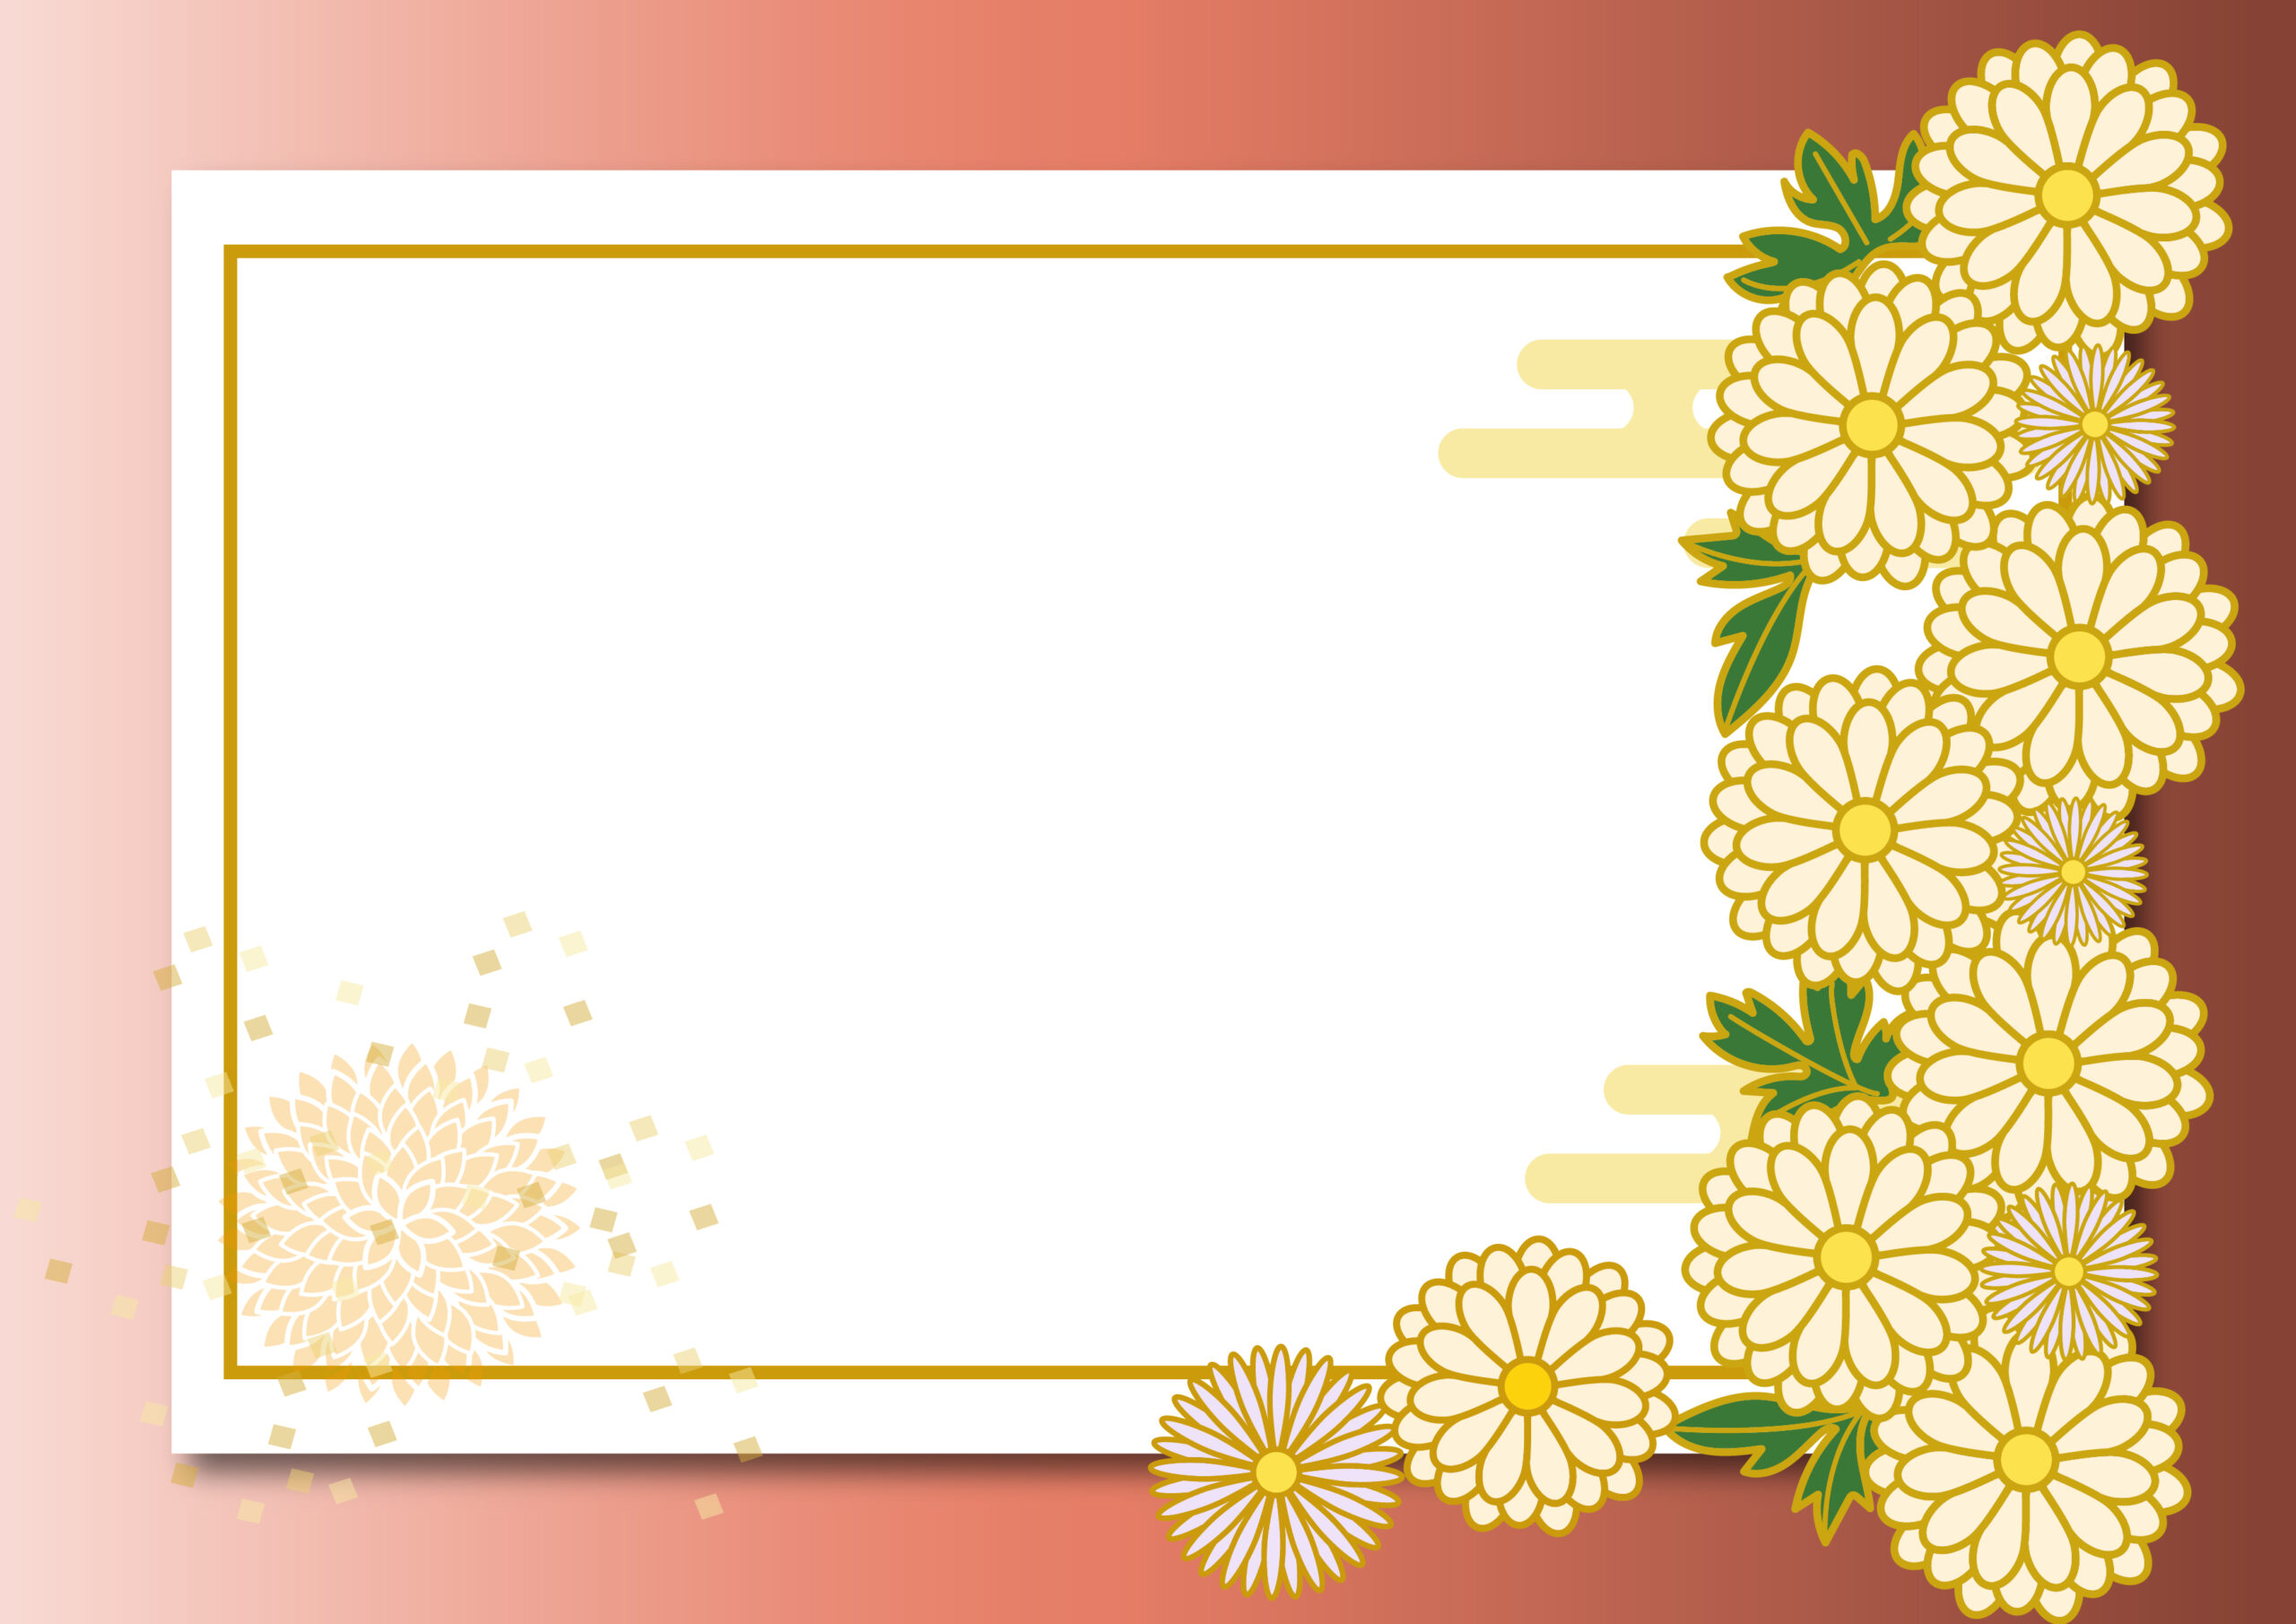 お正月のメッセージカードやお店の新春クーポン、お客様への挨拶状のデザインにおすすめのかわいいフレーム素材になります。お花のイラスト入りでおしゃれな和風テイストの飾り枠になり、文字は縦書き・横書きどちらもおすすめします。ダウンロード：